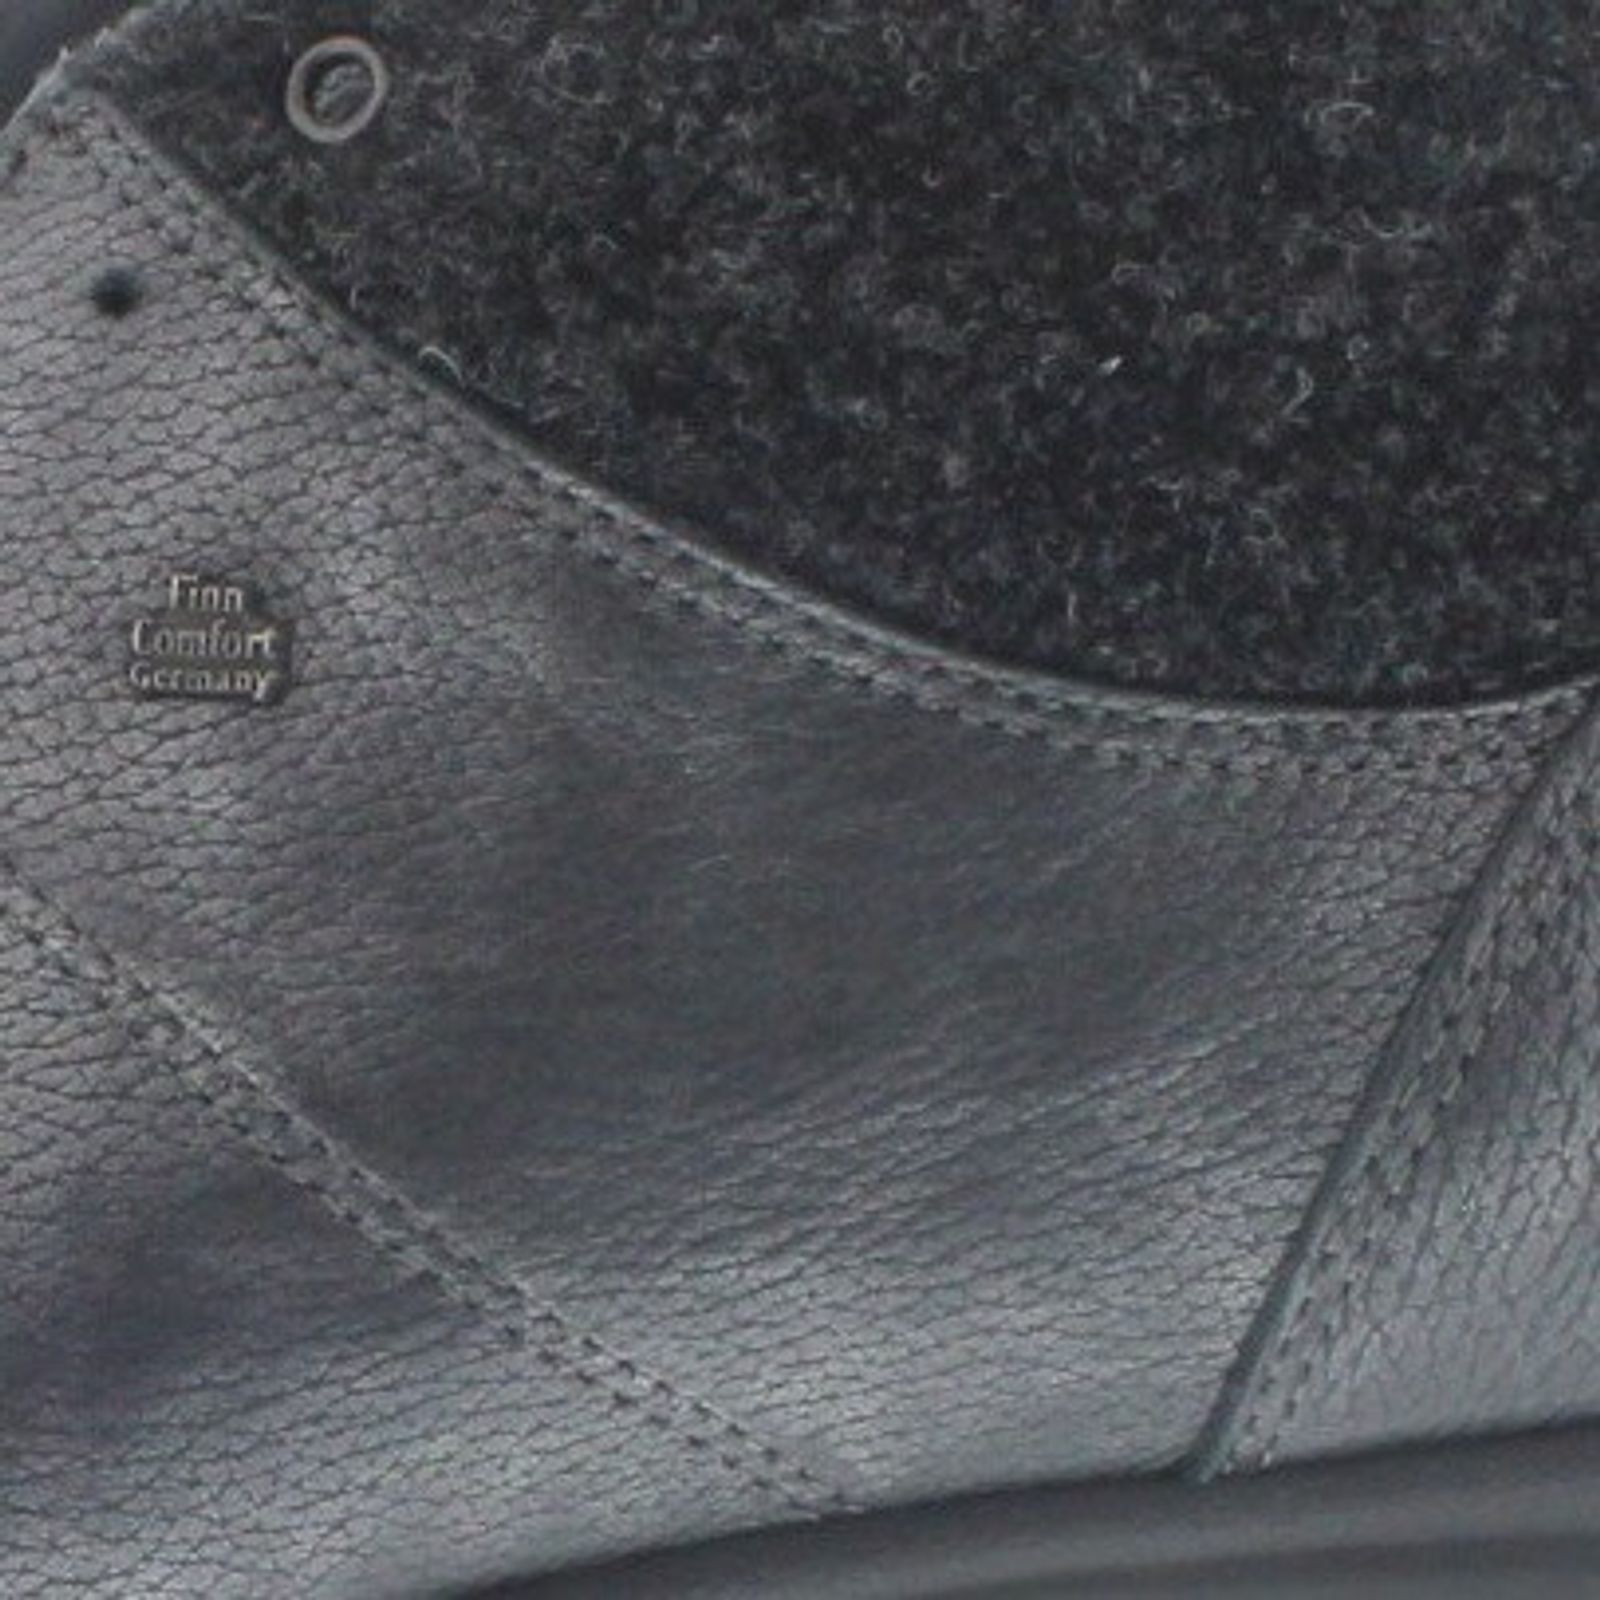 Schuh von Finn Comfort, 6